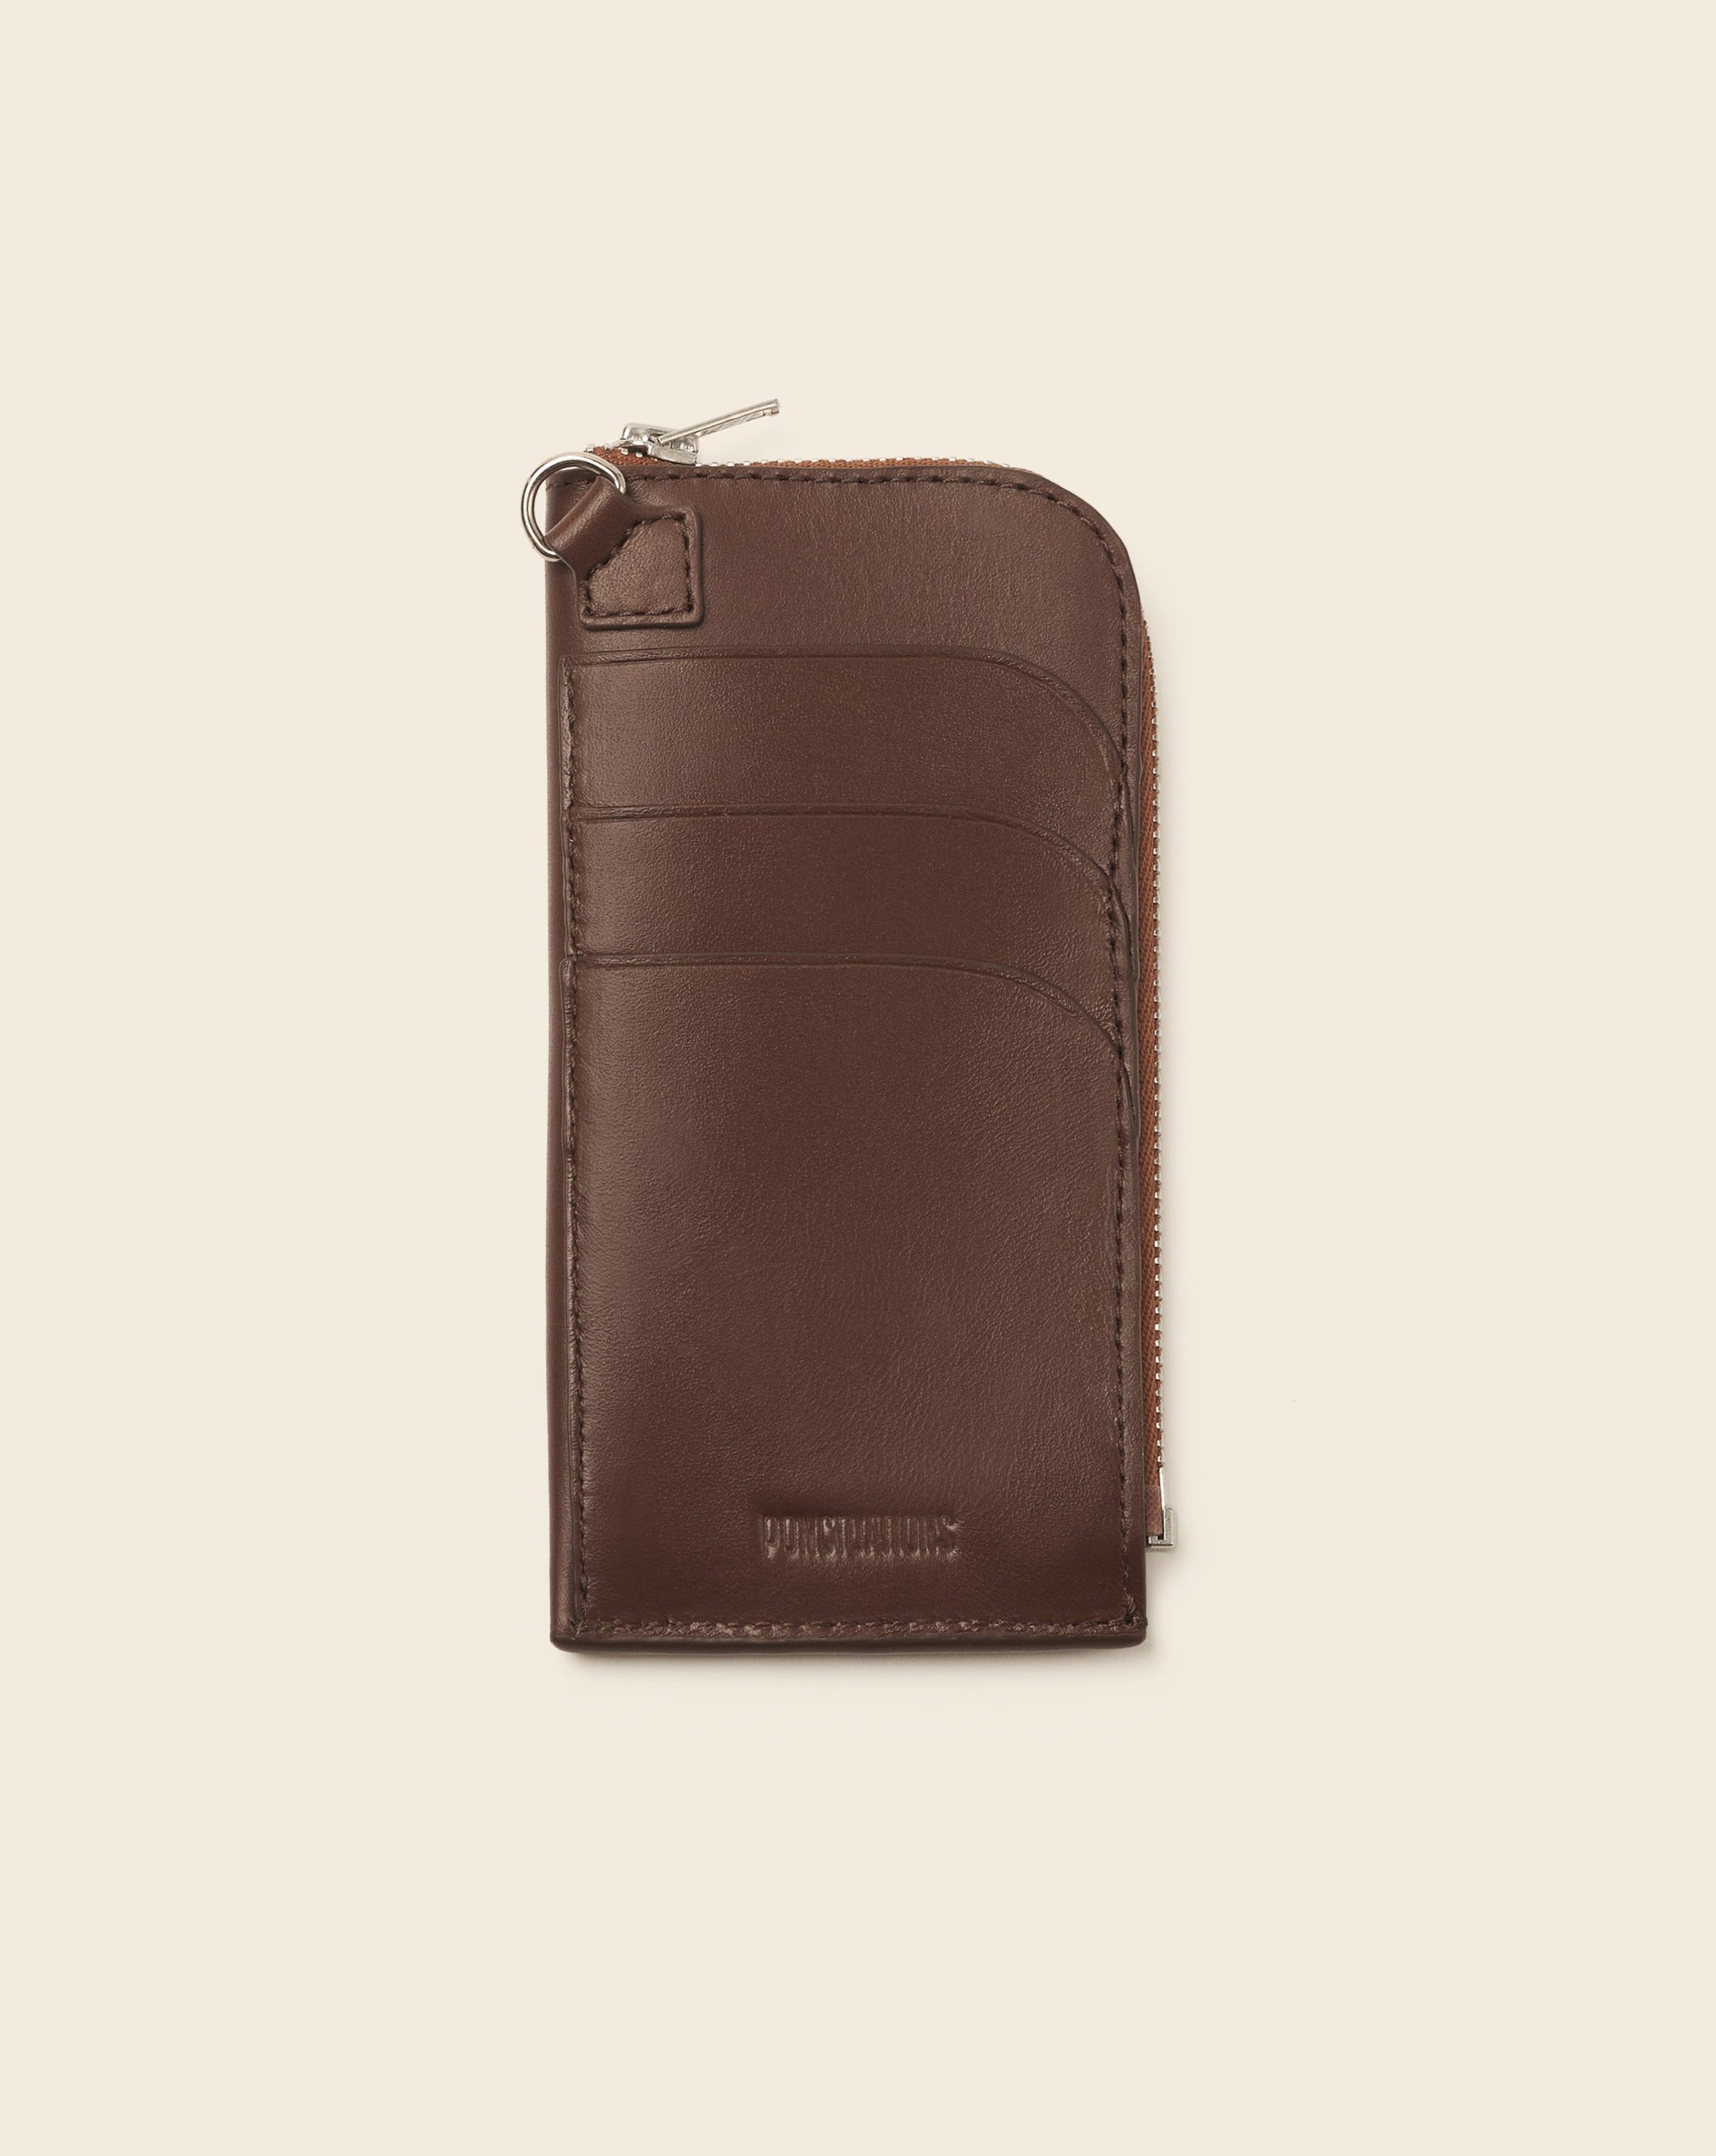 COOK + DAKOTA-Porte cartes sur mousqueton-En cuir brun & broderie colorée